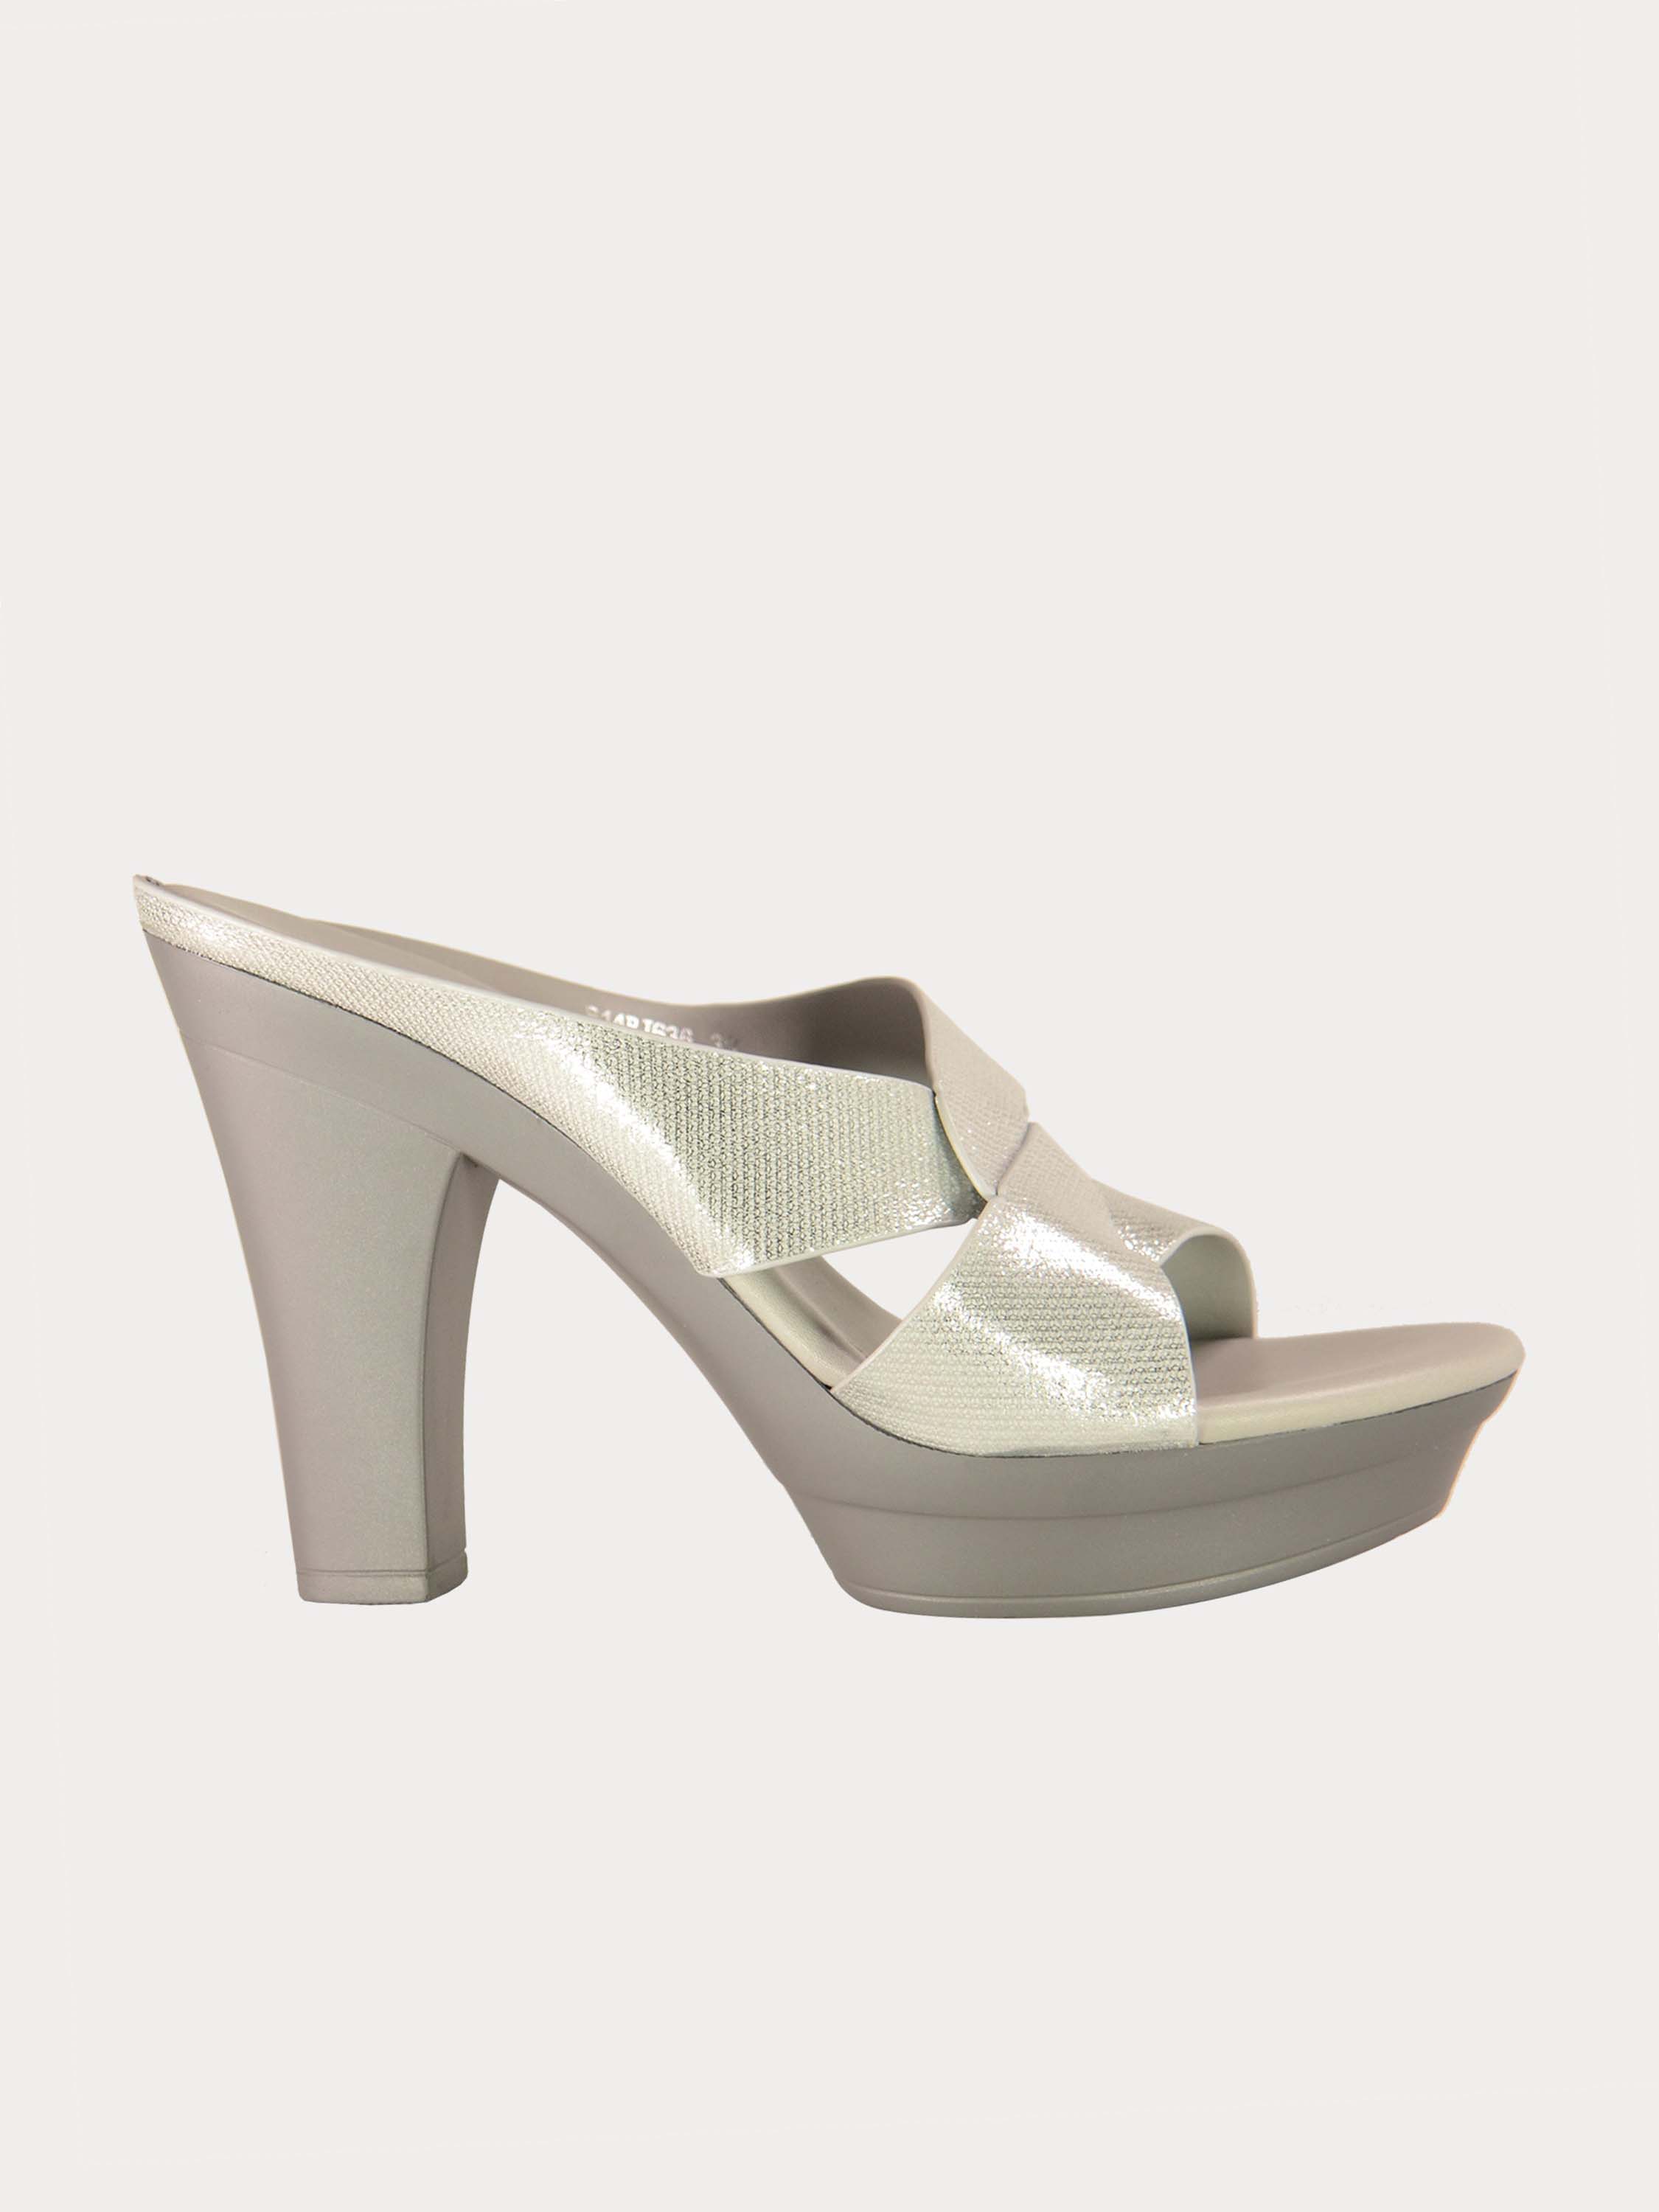 Michelle Morgan 914RJ636 Women's Glitzy Heeled Sandals #color_Silver